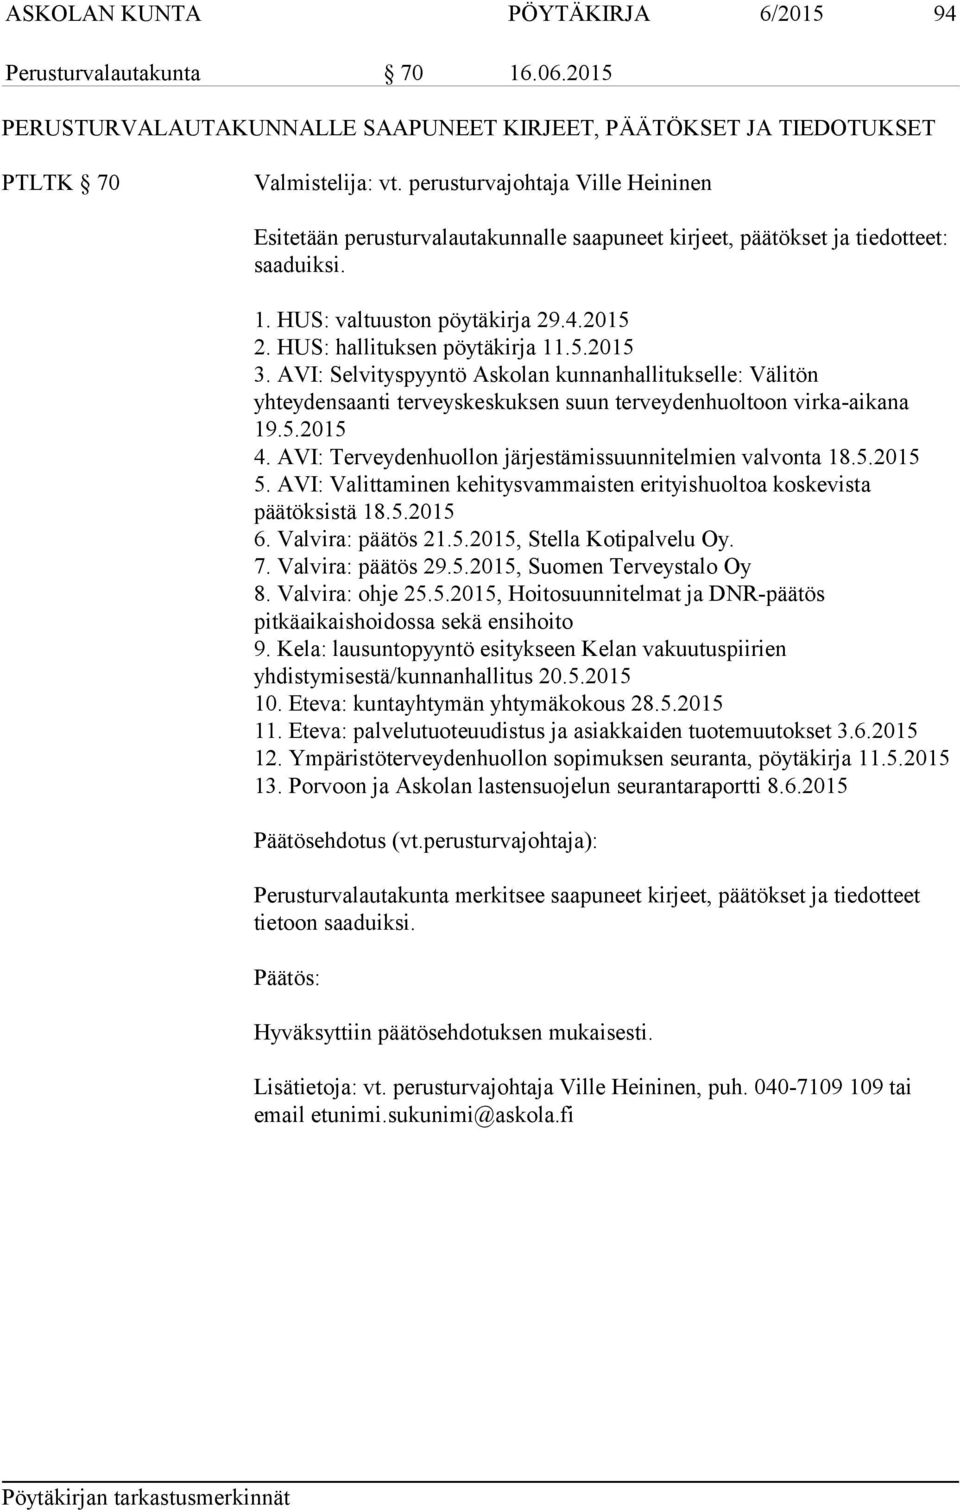 AVI: Selvityspyyntö Askolan kunnanhallitukselle: Välitön yhteydensaanti terveyskeskuksen suun terveydenhuoltoon virka-aikana 19.5.2015 4. AVI: Terveydenhuollon järjestämissuunnitelmien valvonta 18.5.2015 5.